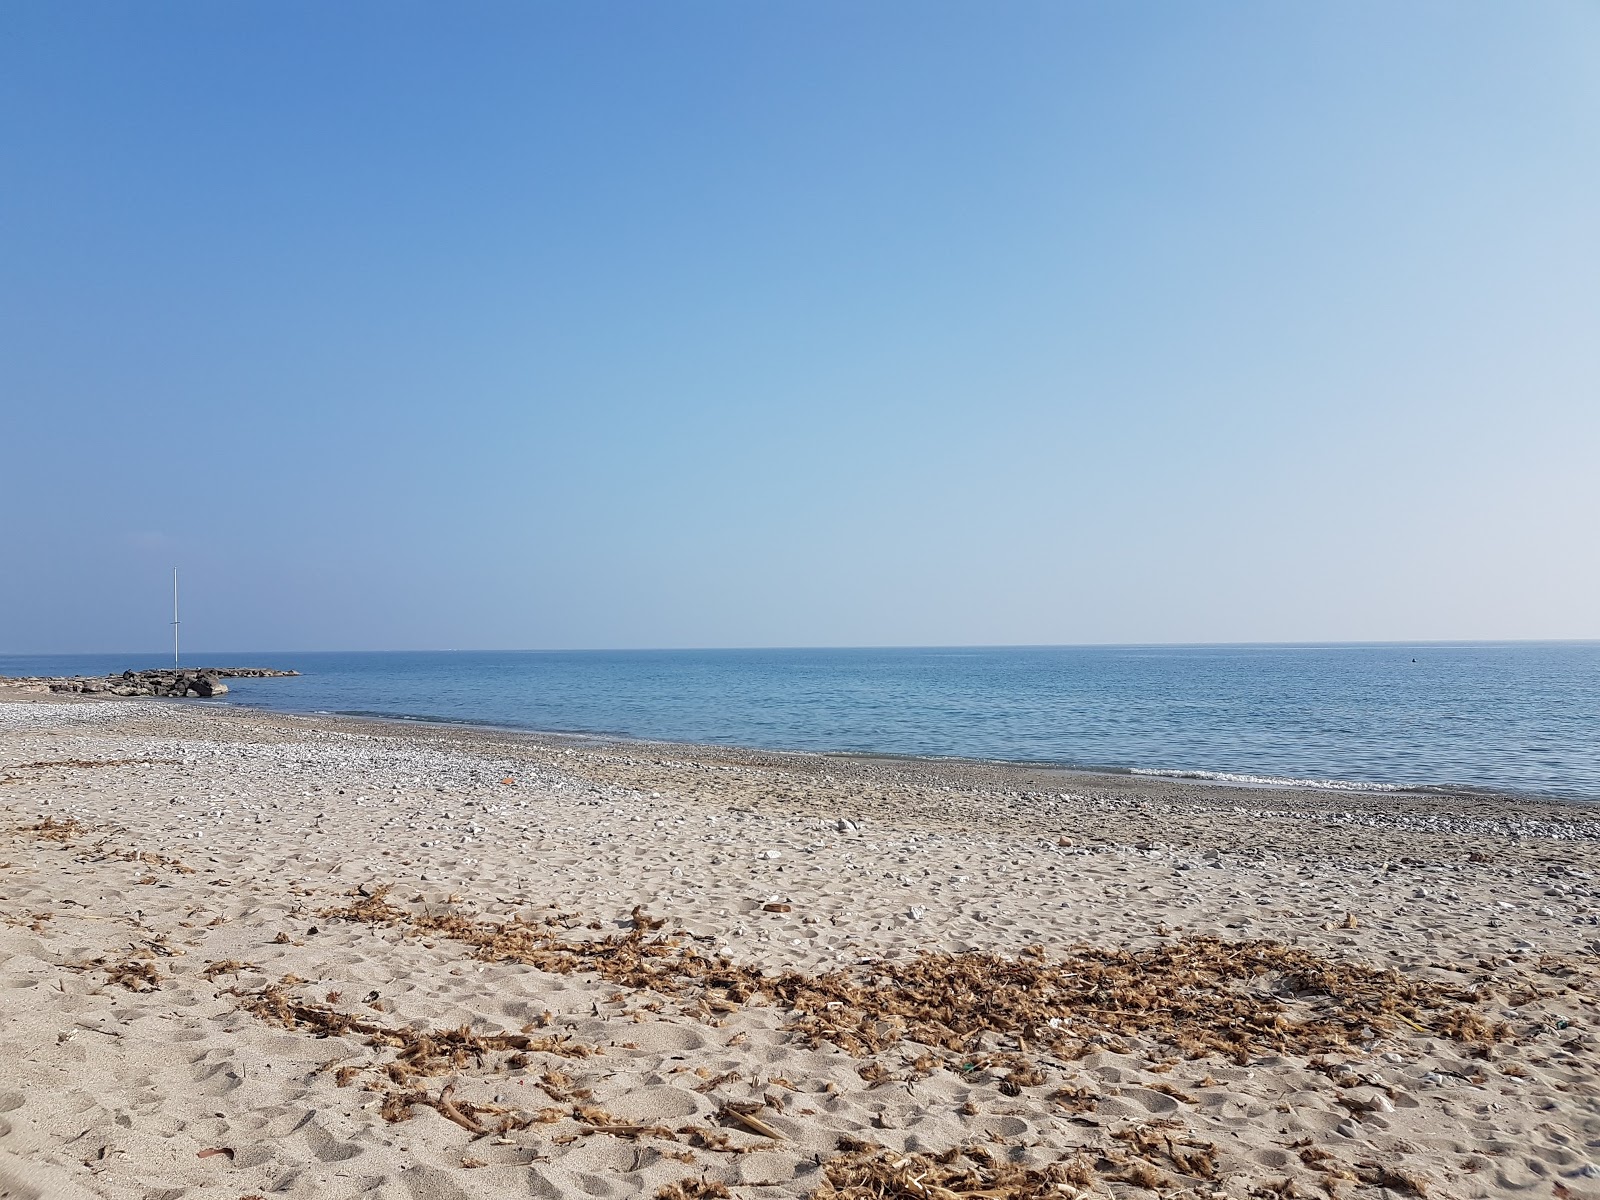 Photo de San Sebastiano beach - endroit populaire parmi les connaisseurs de la détente